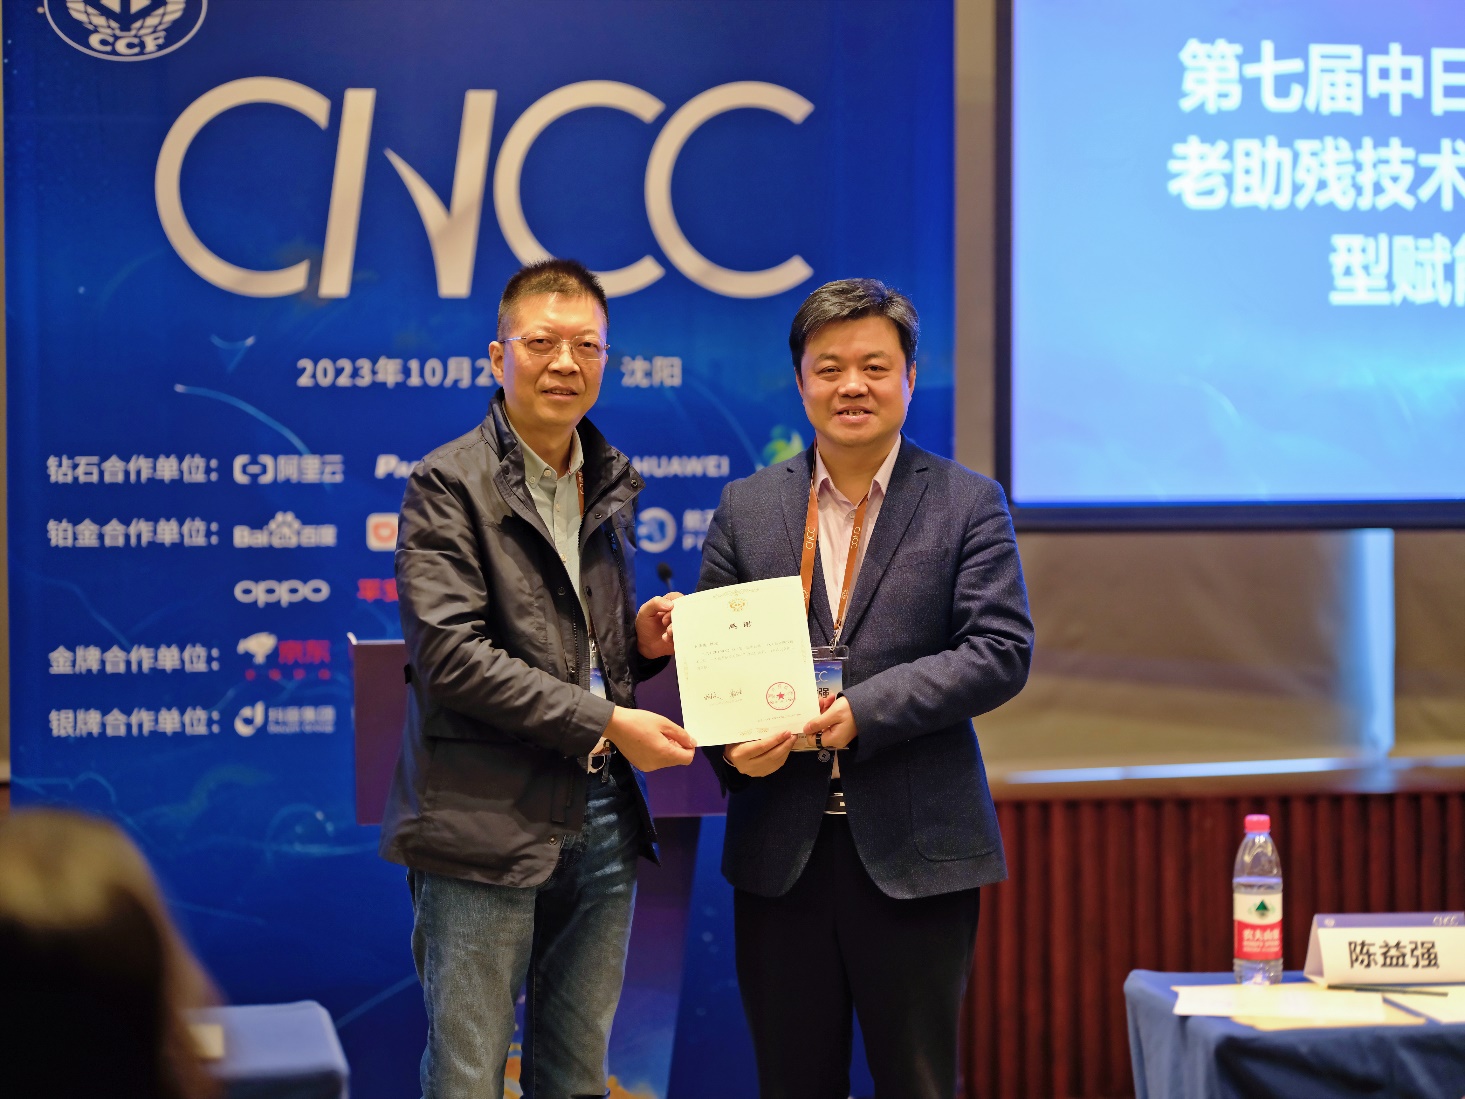 浙江大学创新软件研发中心深度参与第二十届中国计算机大会（CNCC 2023）